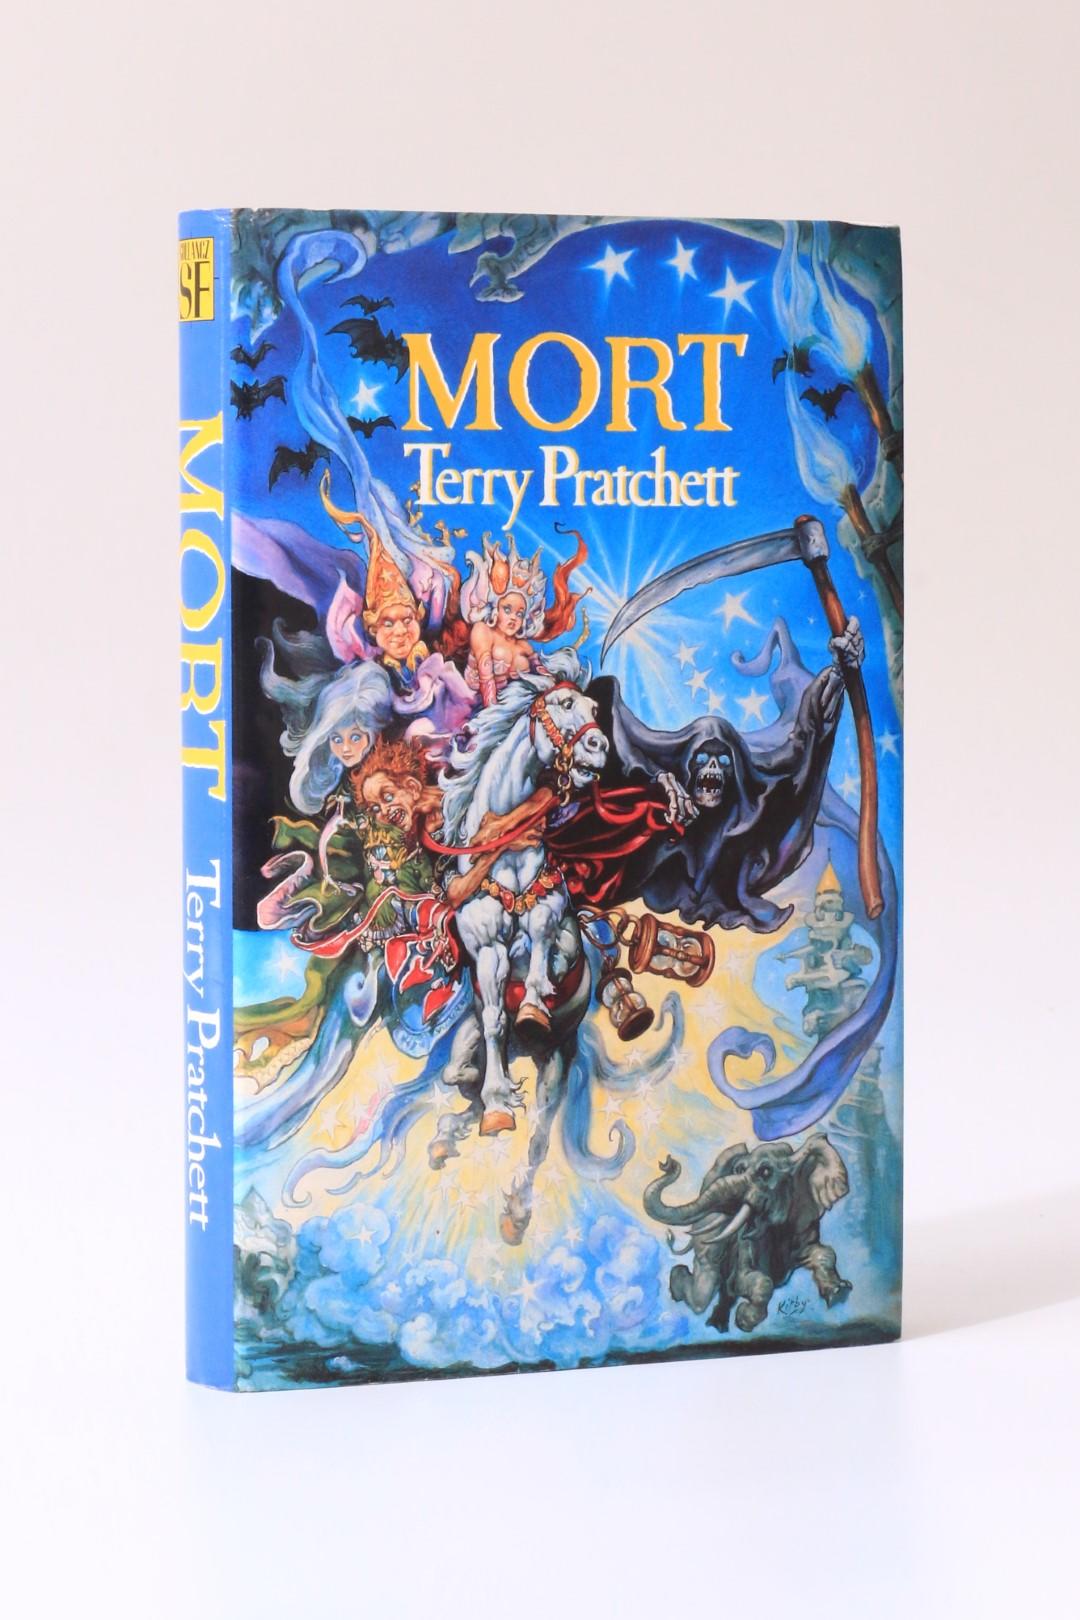 Terry Pratchett - Mort - Gollancz, 1987, First Edition.